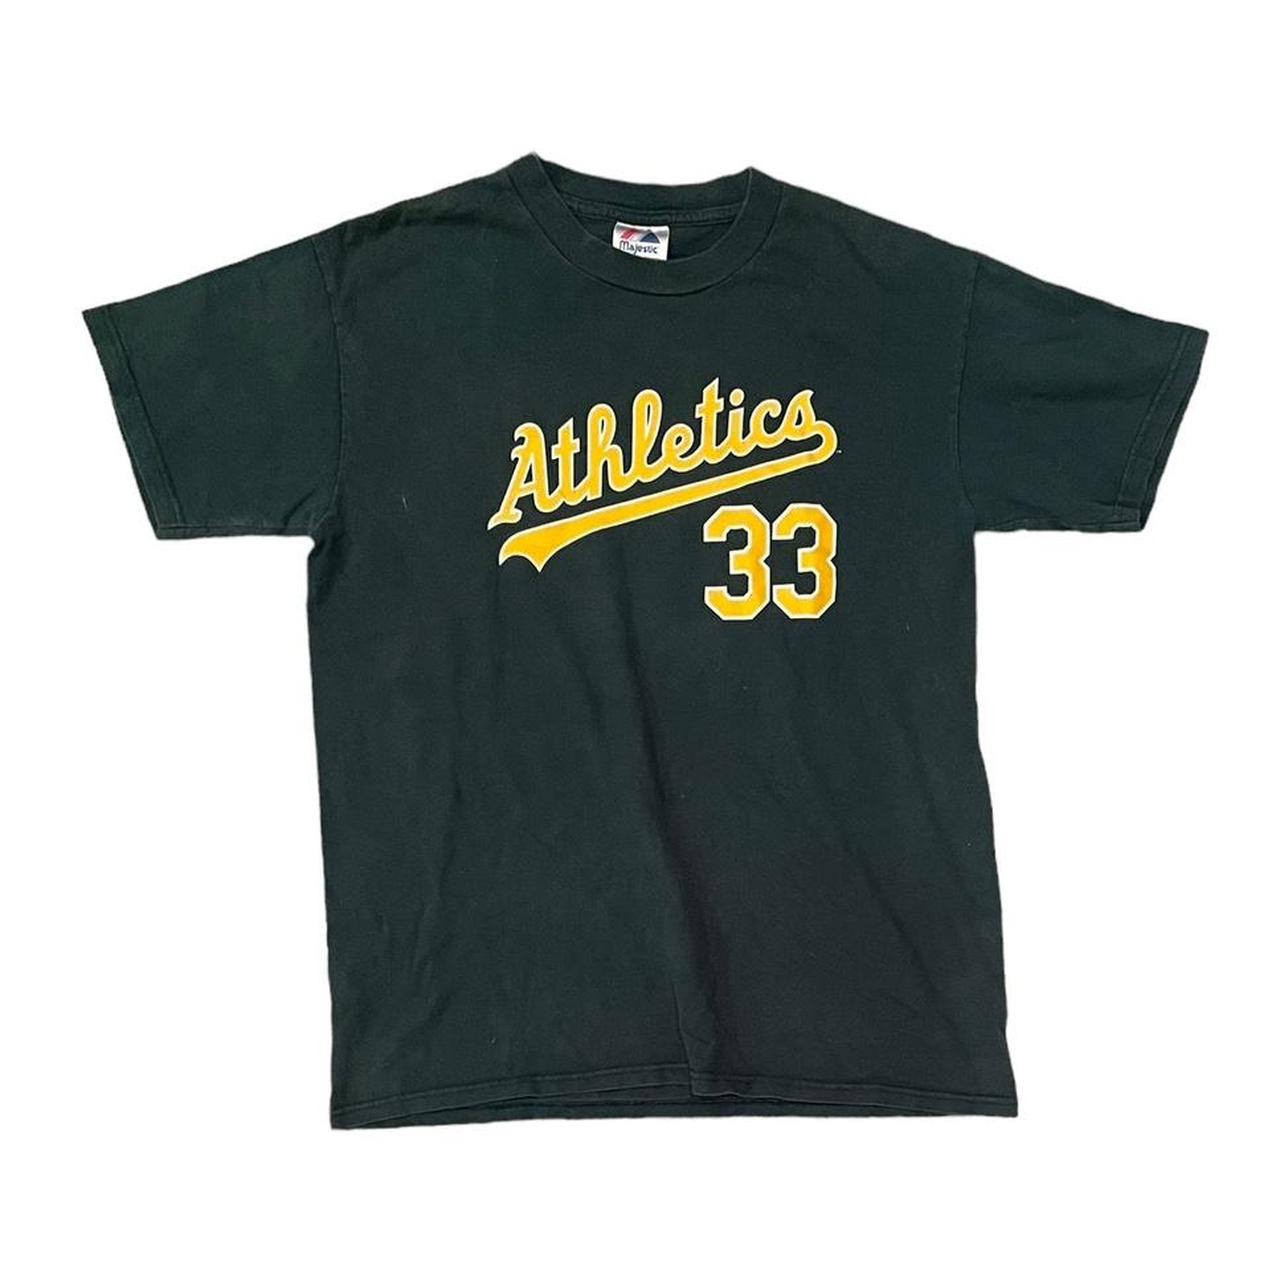 MLB Baseball Majestic Oakland Athletics Jersey Size XL